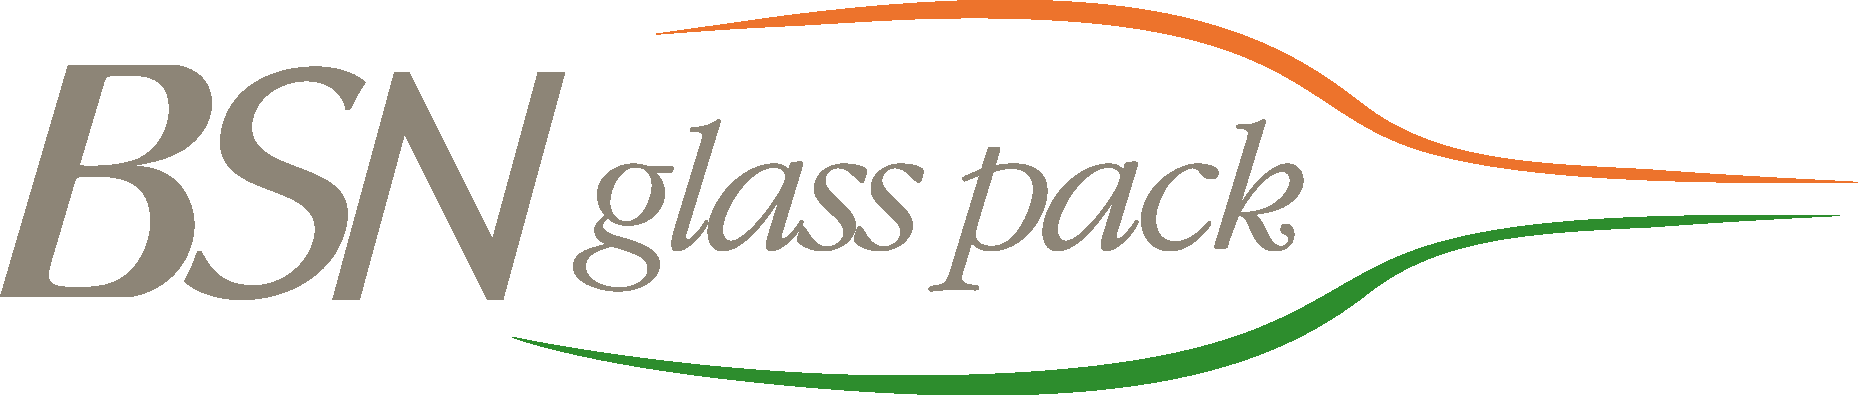 BSN Glass pack Logo Vector